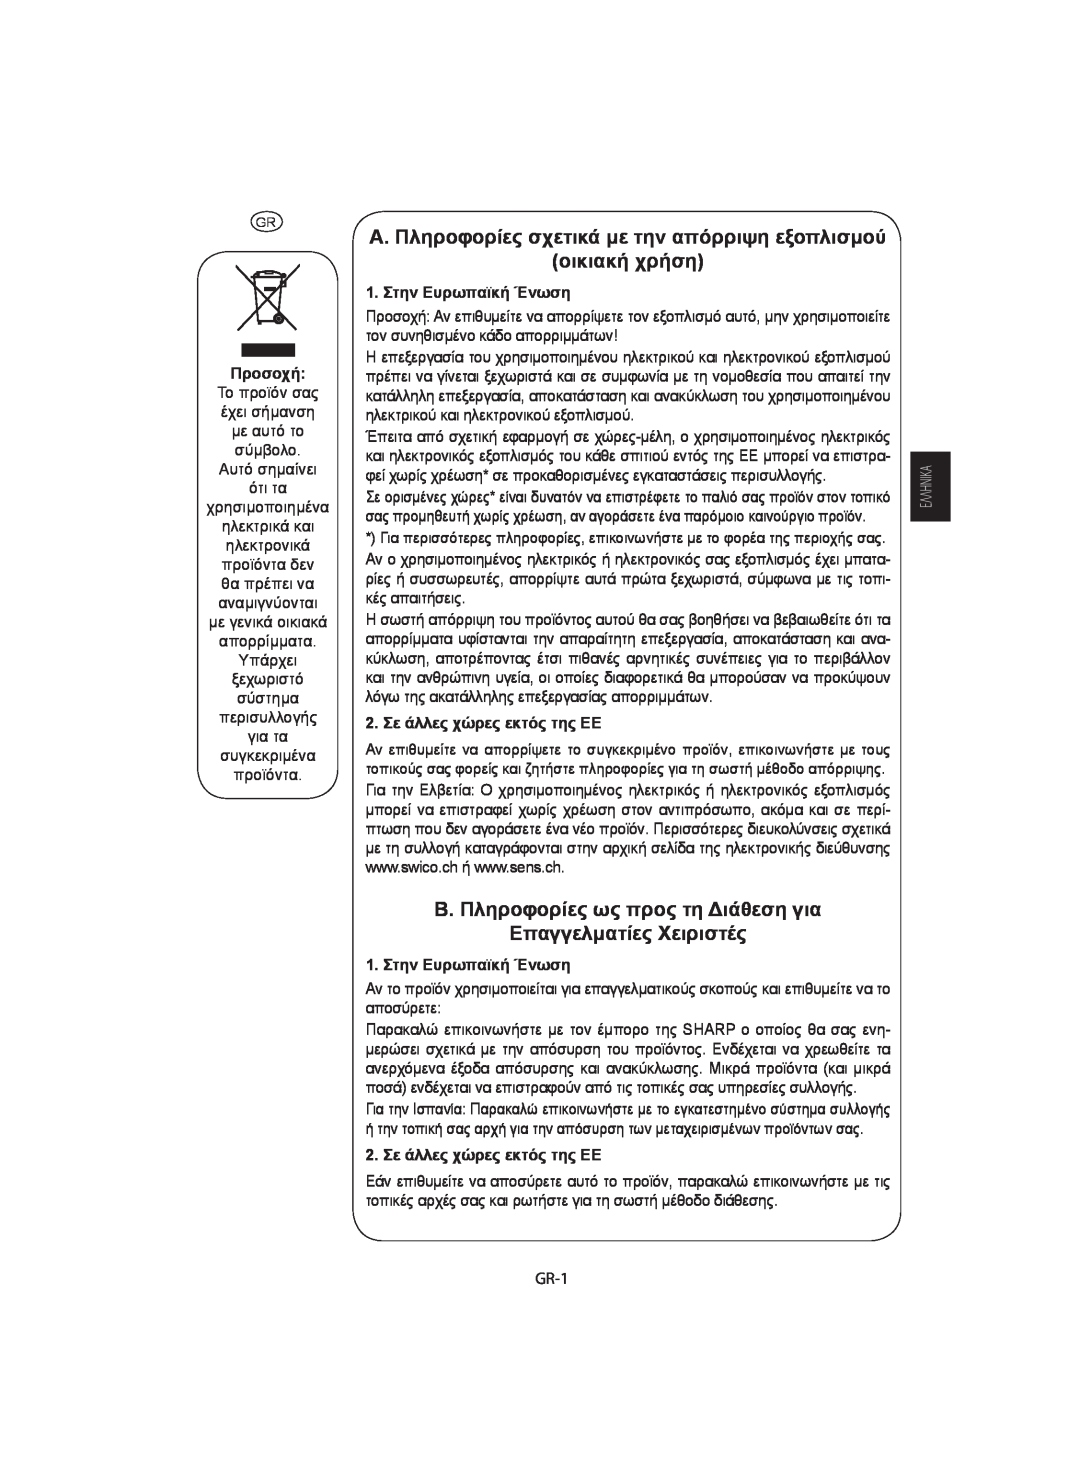 Sharp R-742, R-642 manual A. Πληροφορίες σχετικά με την απόρριψη εξοπλισμού οικιακή χρήση, Προσοχή, 1. Στην Ευρωπαϊκή Ένωση 